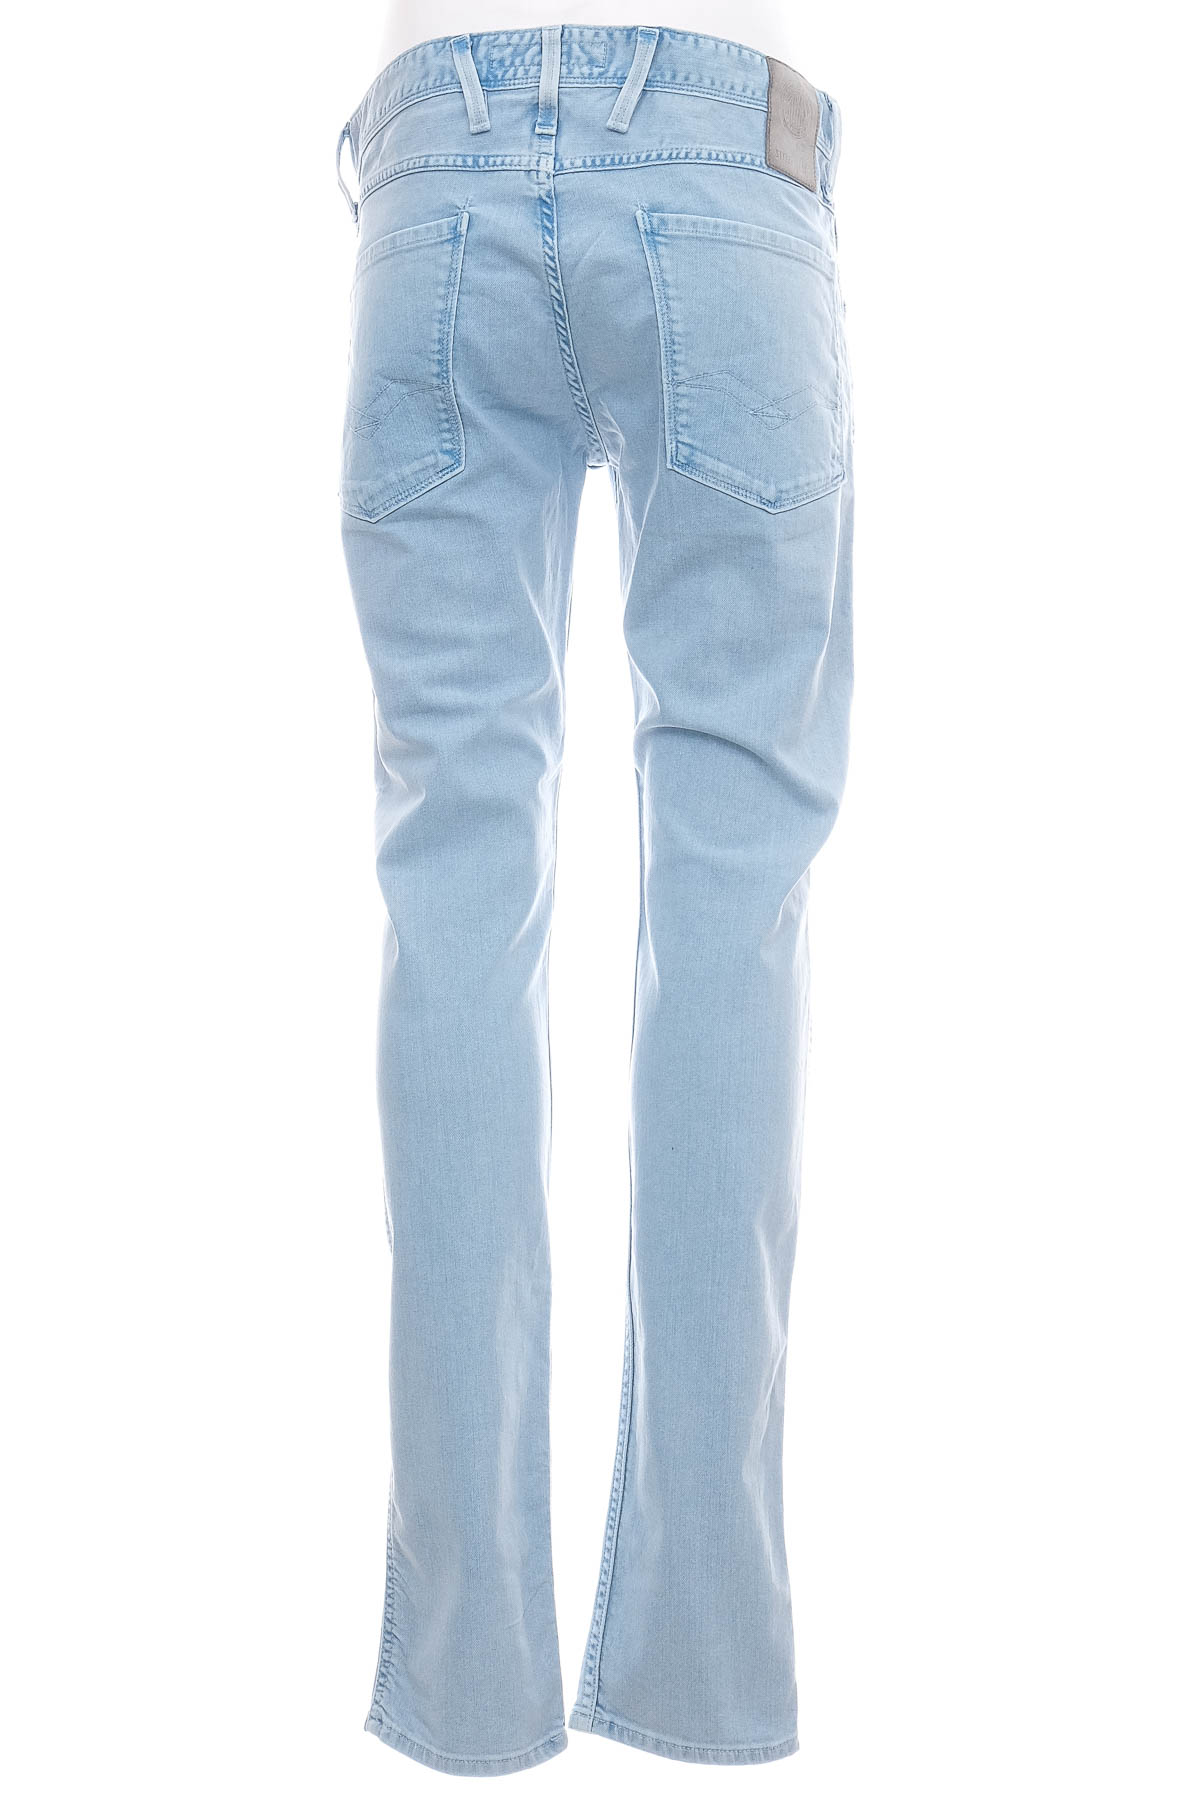 Men's jeans - REPLAY - 1